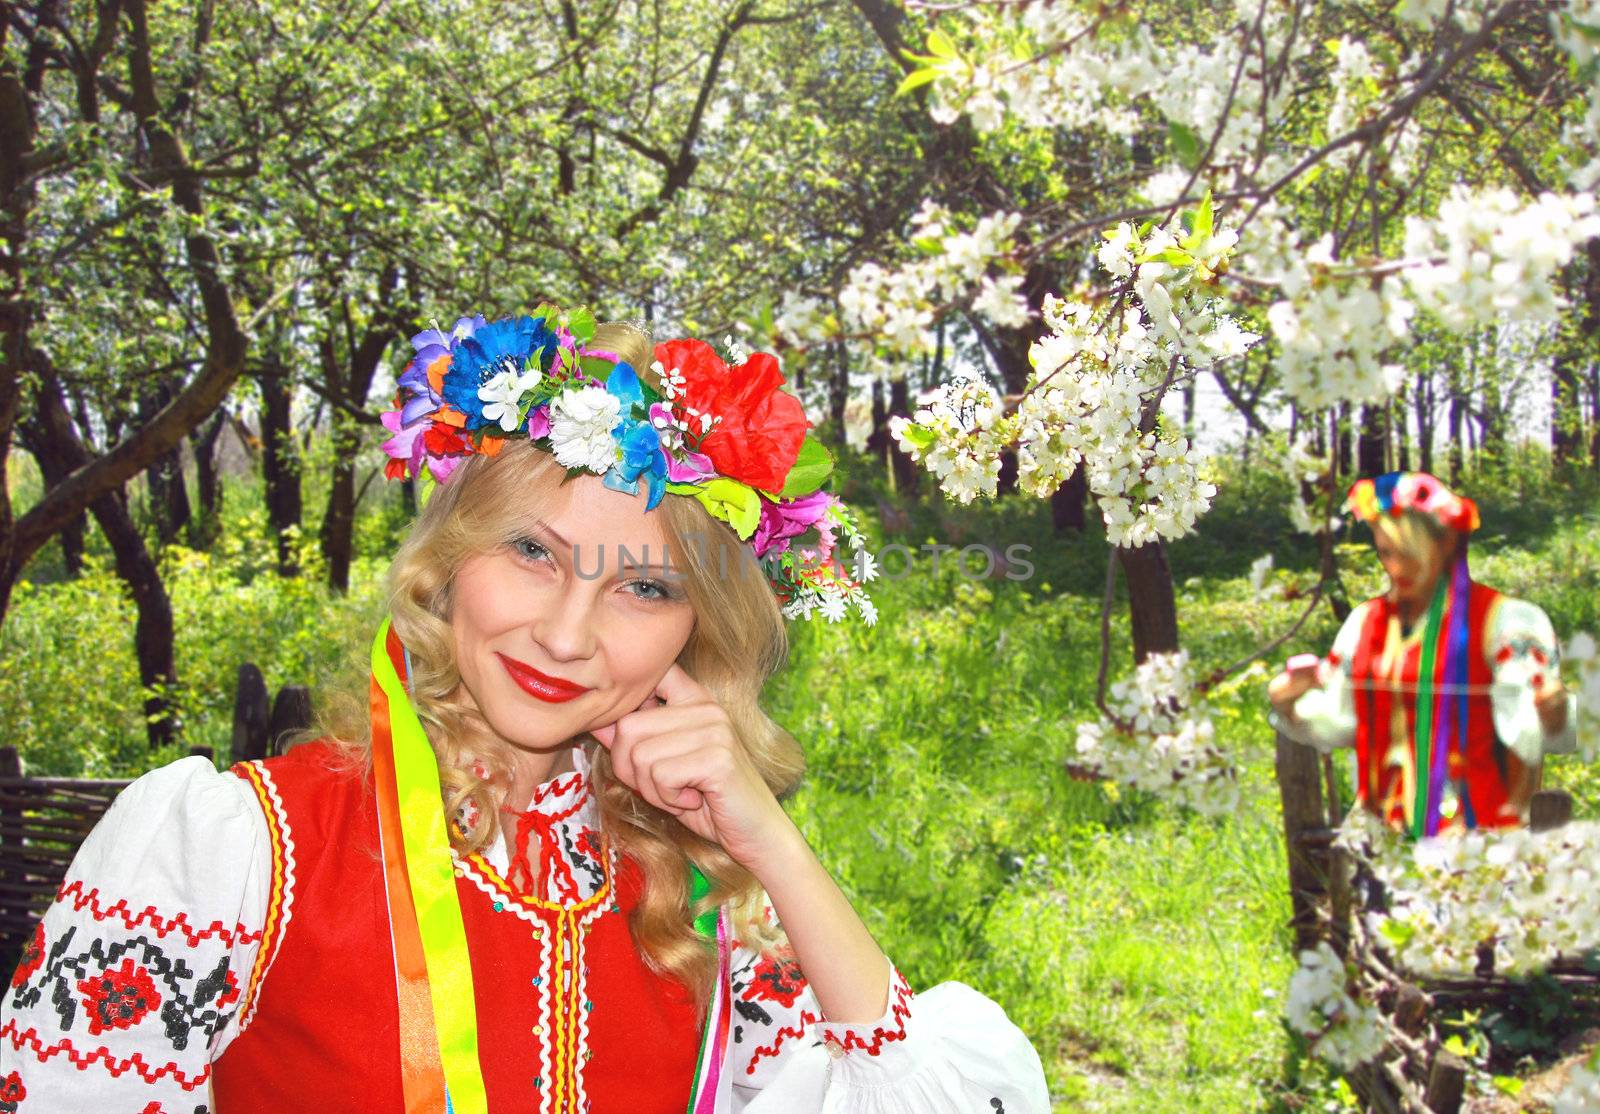 Ukrainian girl in national dress in a flowering spring garden